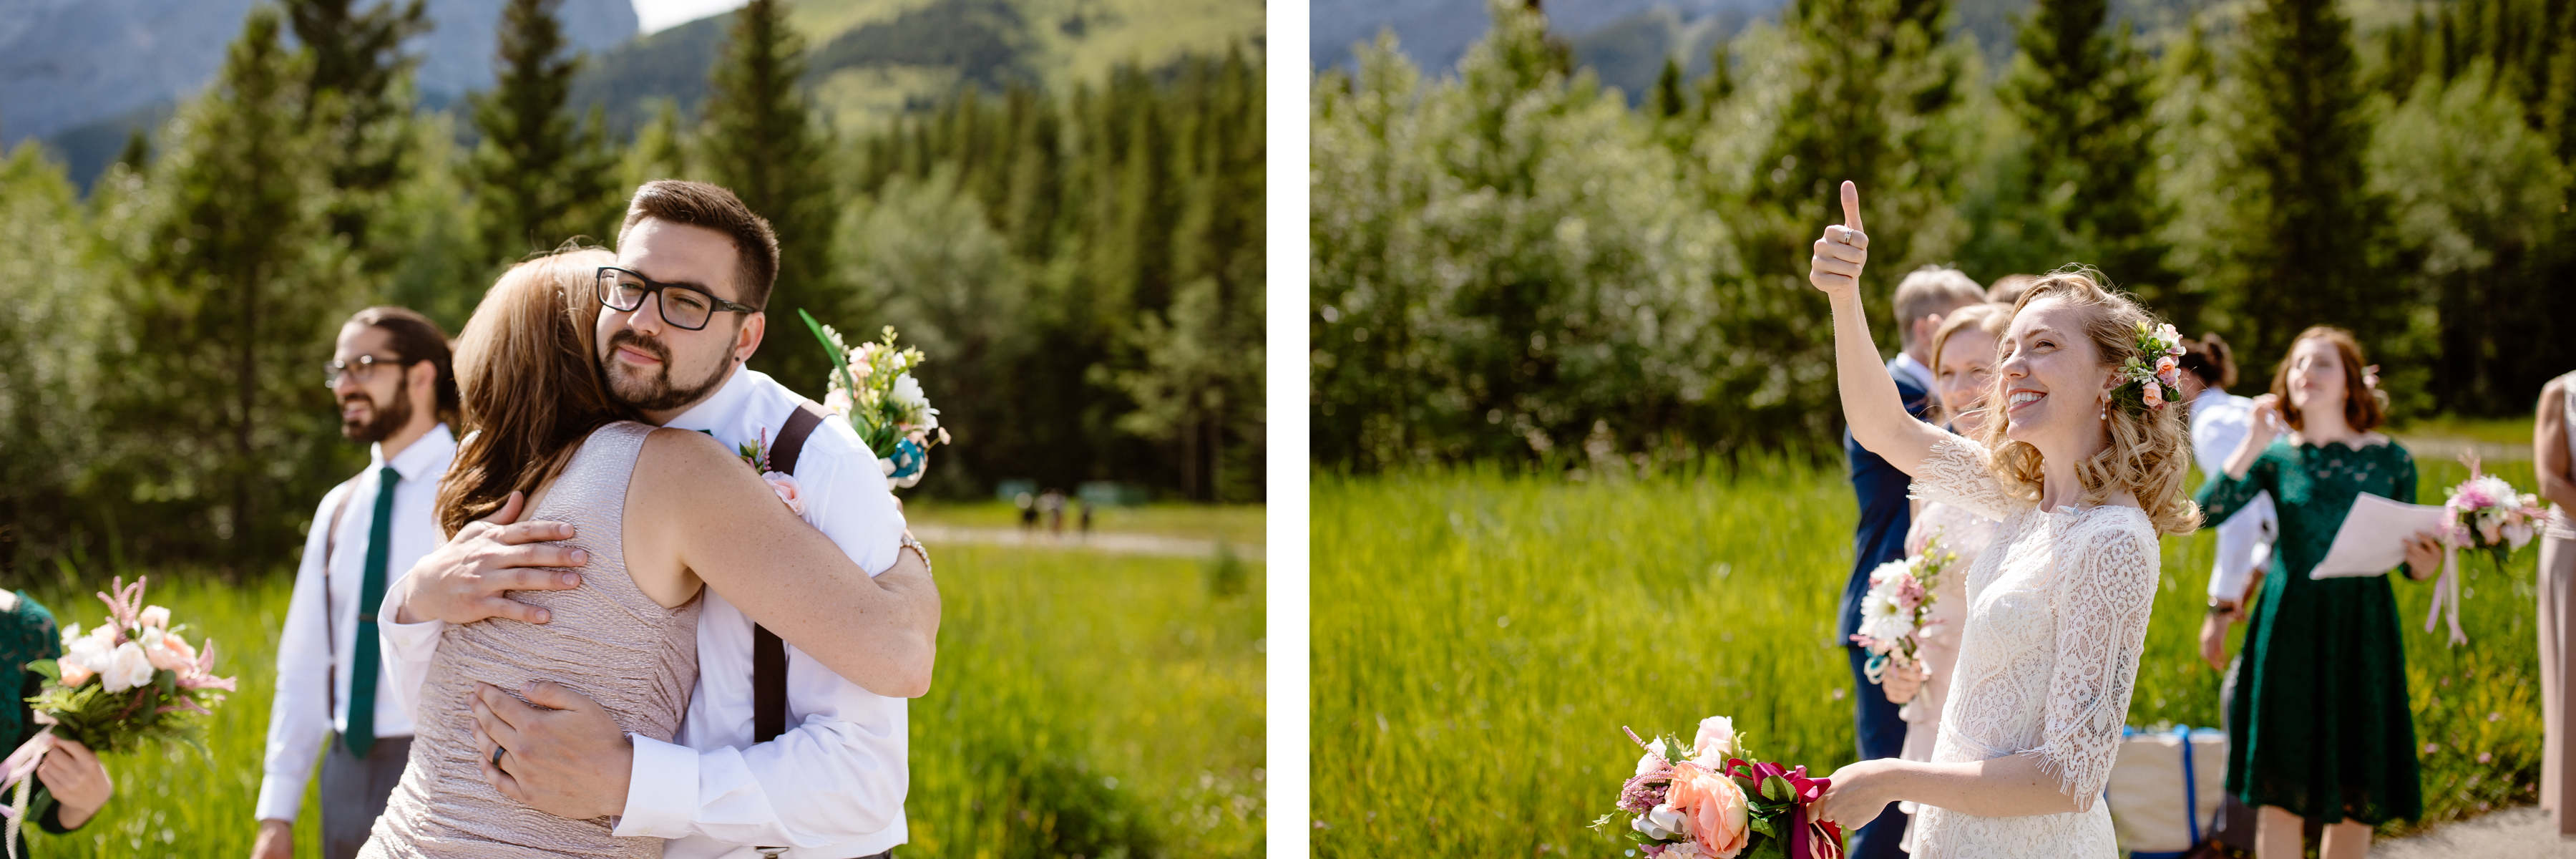 Kananaskis Wedding Photography at Pomeroy Mountain Lodge - Image  35